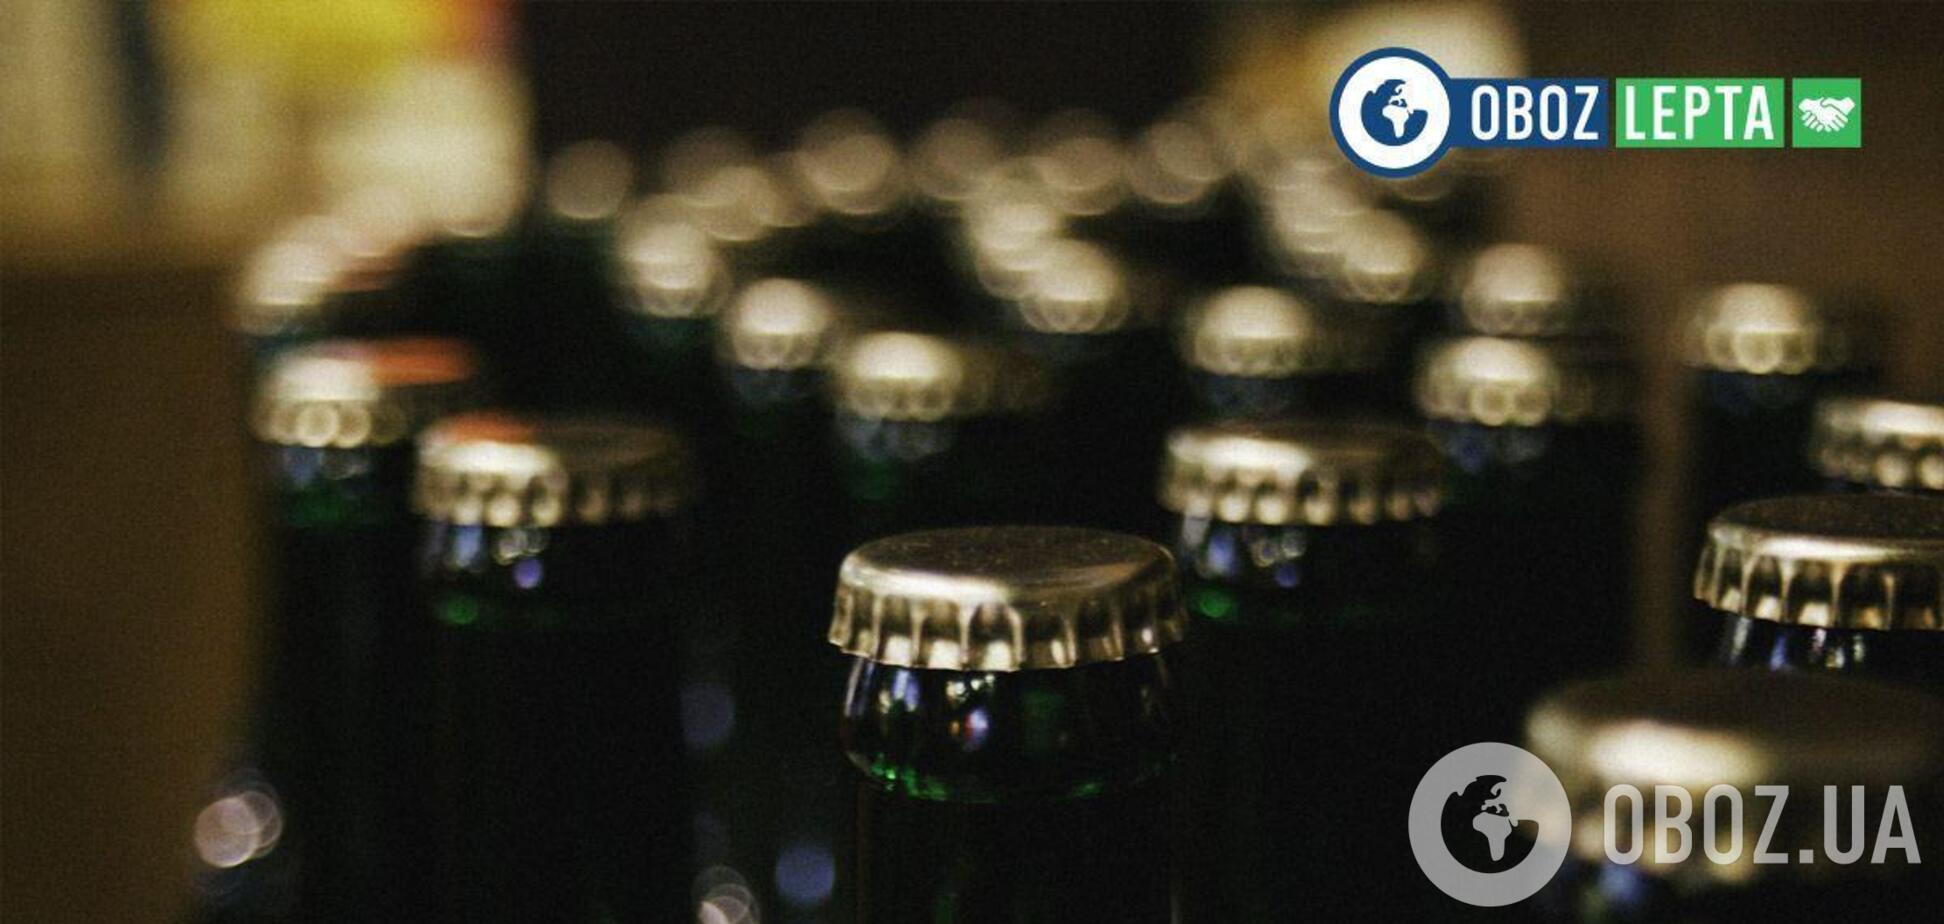 Lepta отправила запросы в 12 крупнейших алкогольных компаний, чтобы те предоставили необходимую информацию о программах КСО